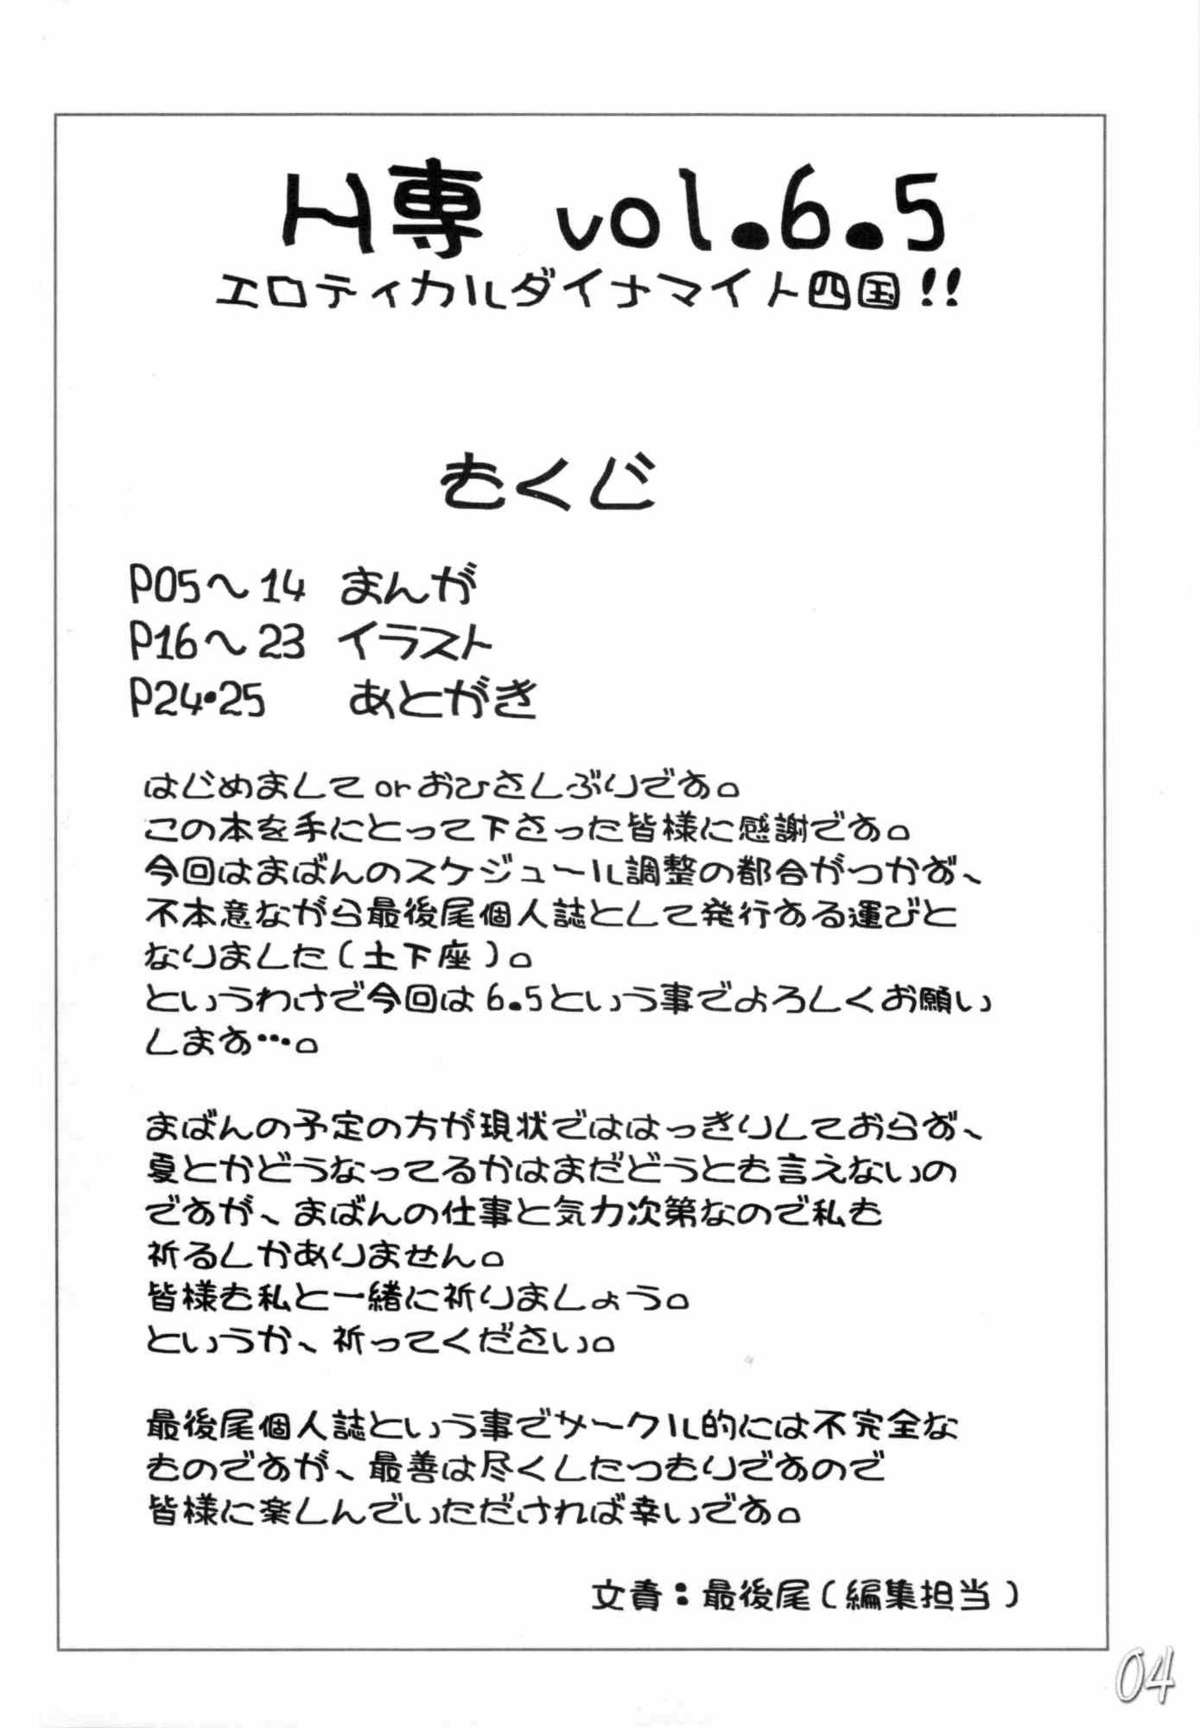 (Mimiket 12) [HIGHWAY-SENMU (Saikoubi)] H-Sen vol. 6.5 (Naruto) [English] page 3 full